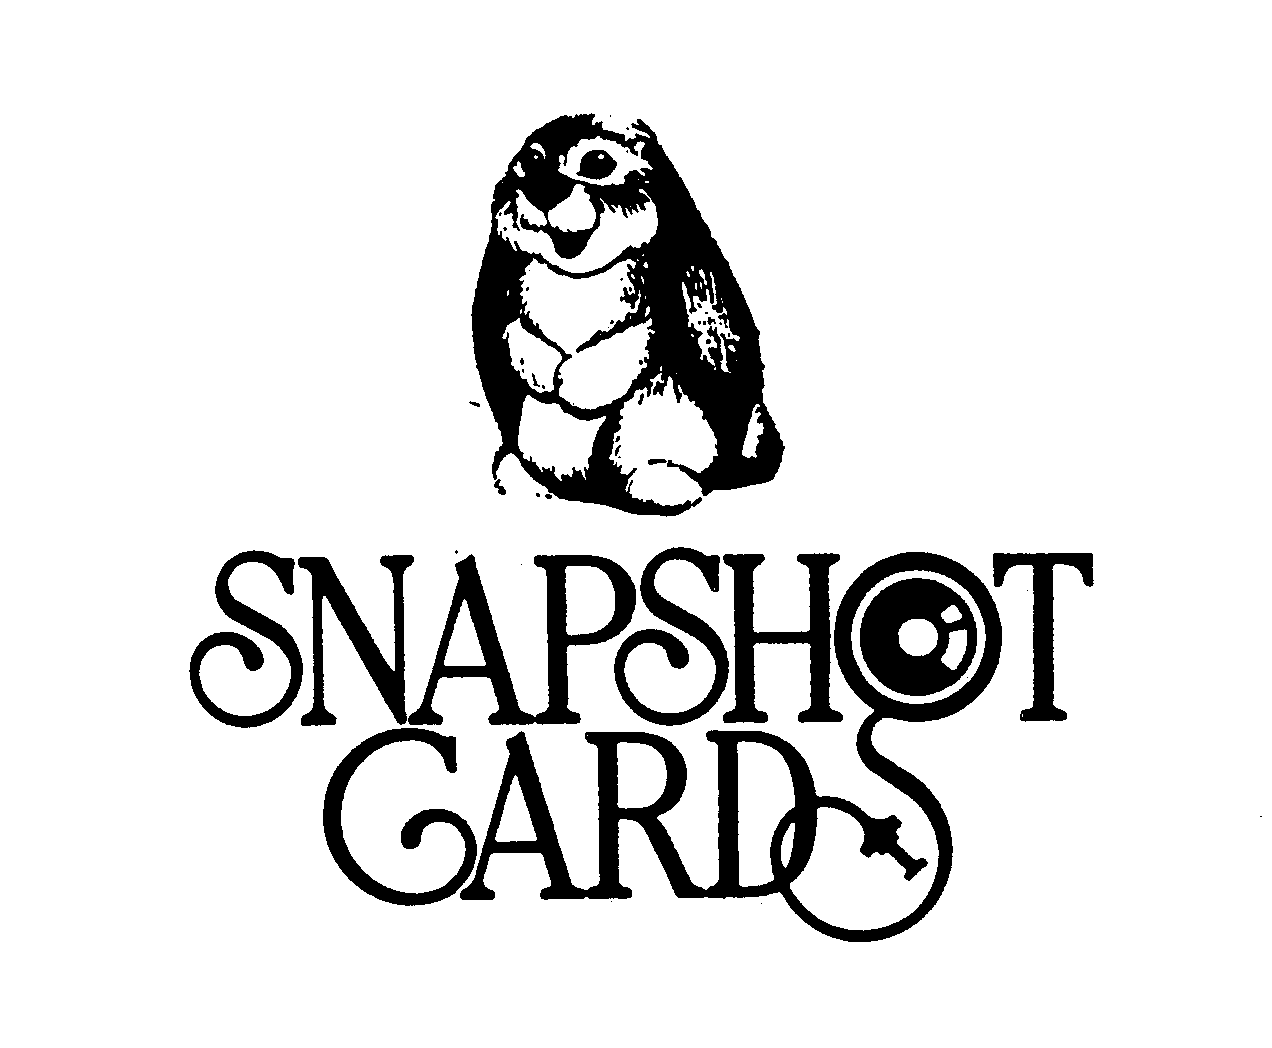  SNAPSHOT CARDS